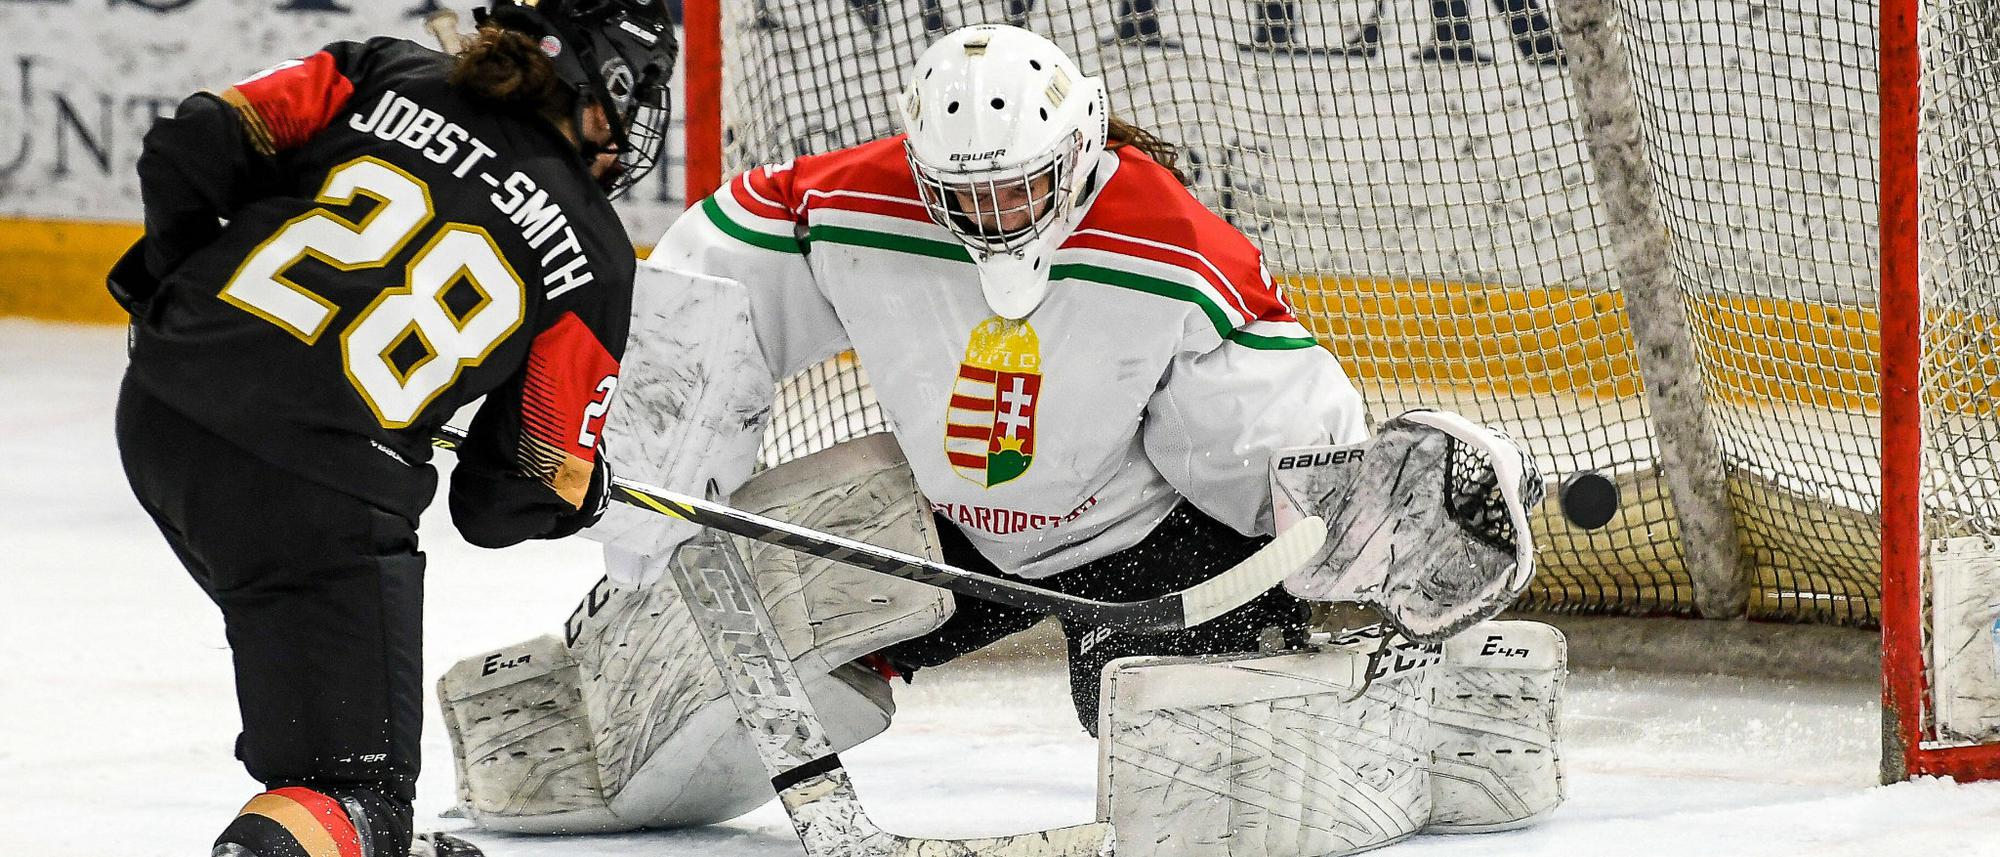 Eishockey-WM der Frauen Deutsches Team verliert zum Auftakt gegen Ungarn